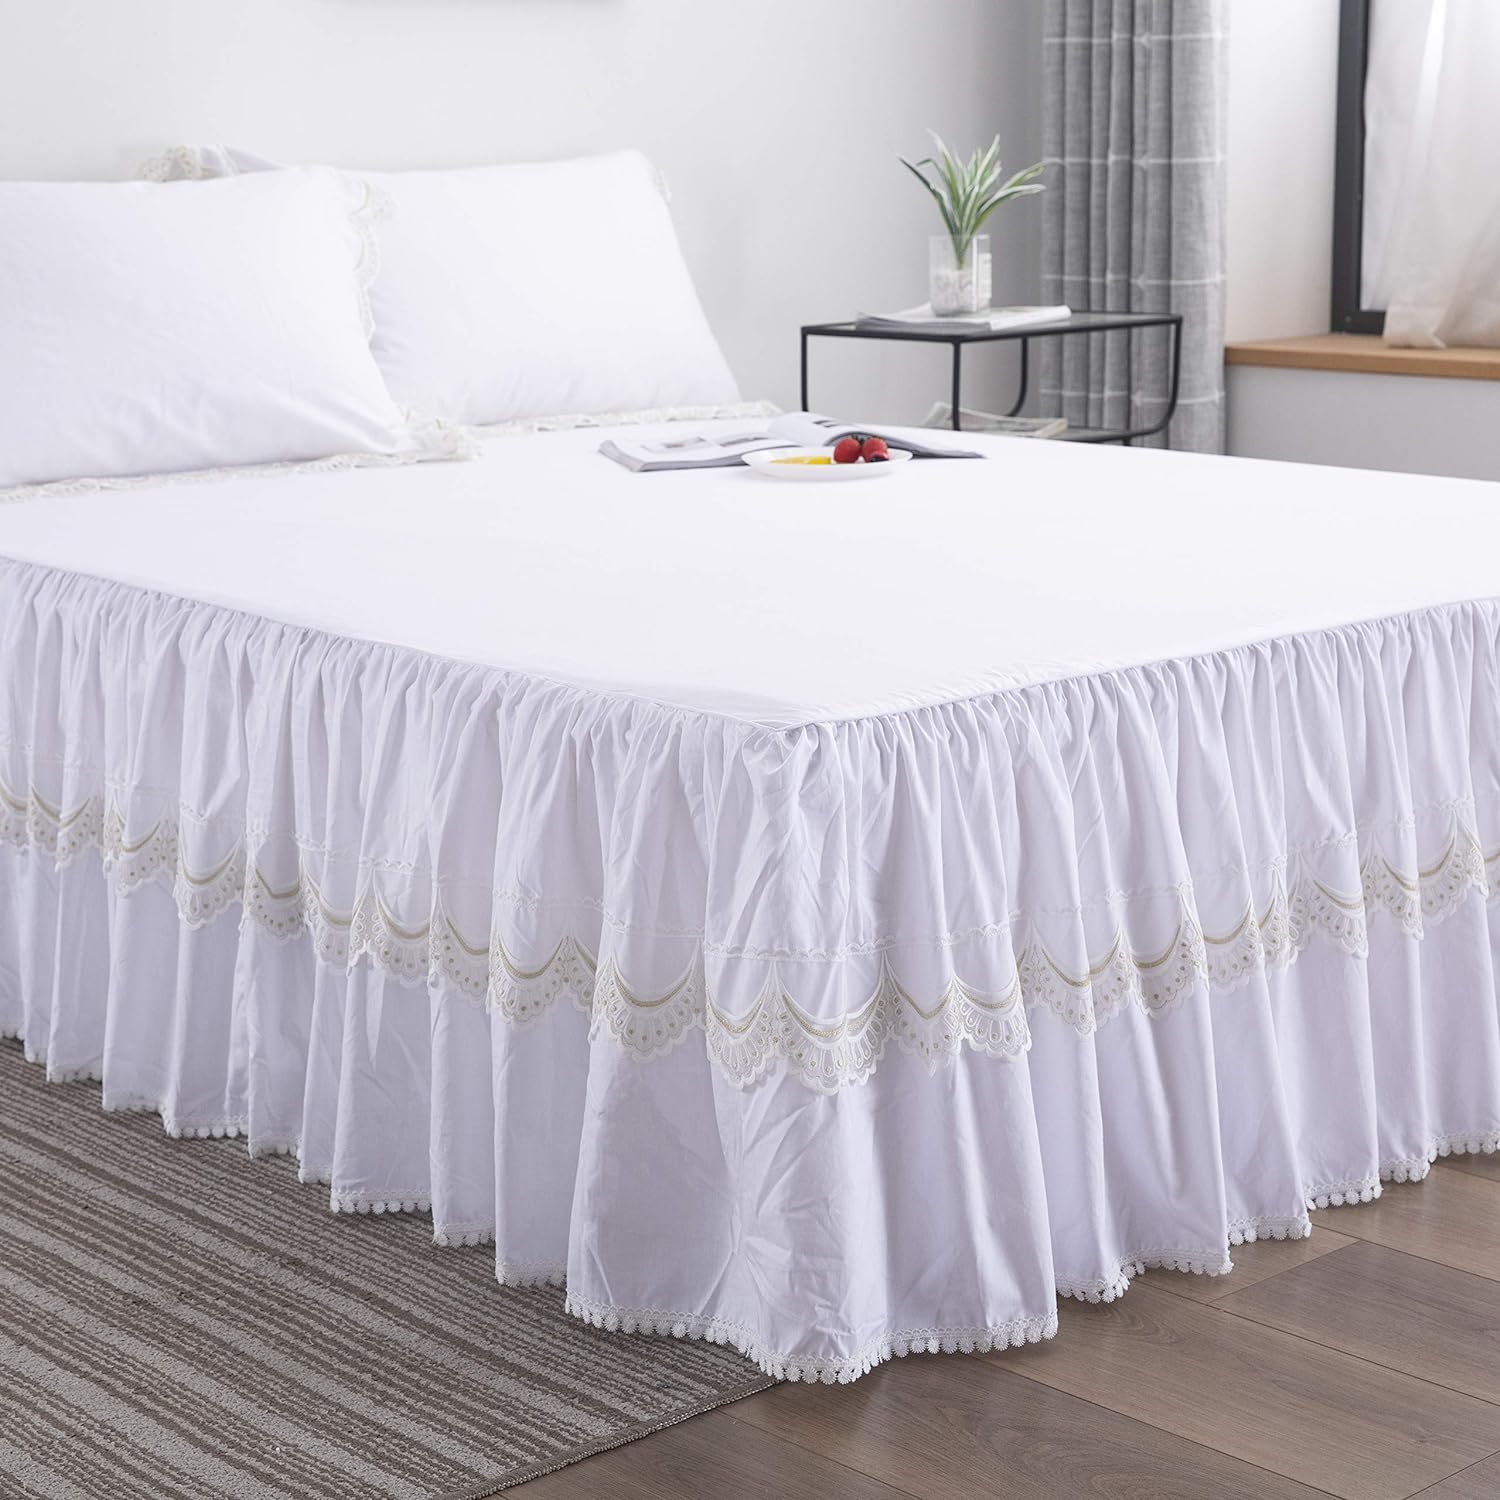 FADFAY Cotton White Bedskirt Set Queen Size Lace Dust Ruffle Super Soft 3 Piece: 1 Bedskirt, 2 Pillowshams